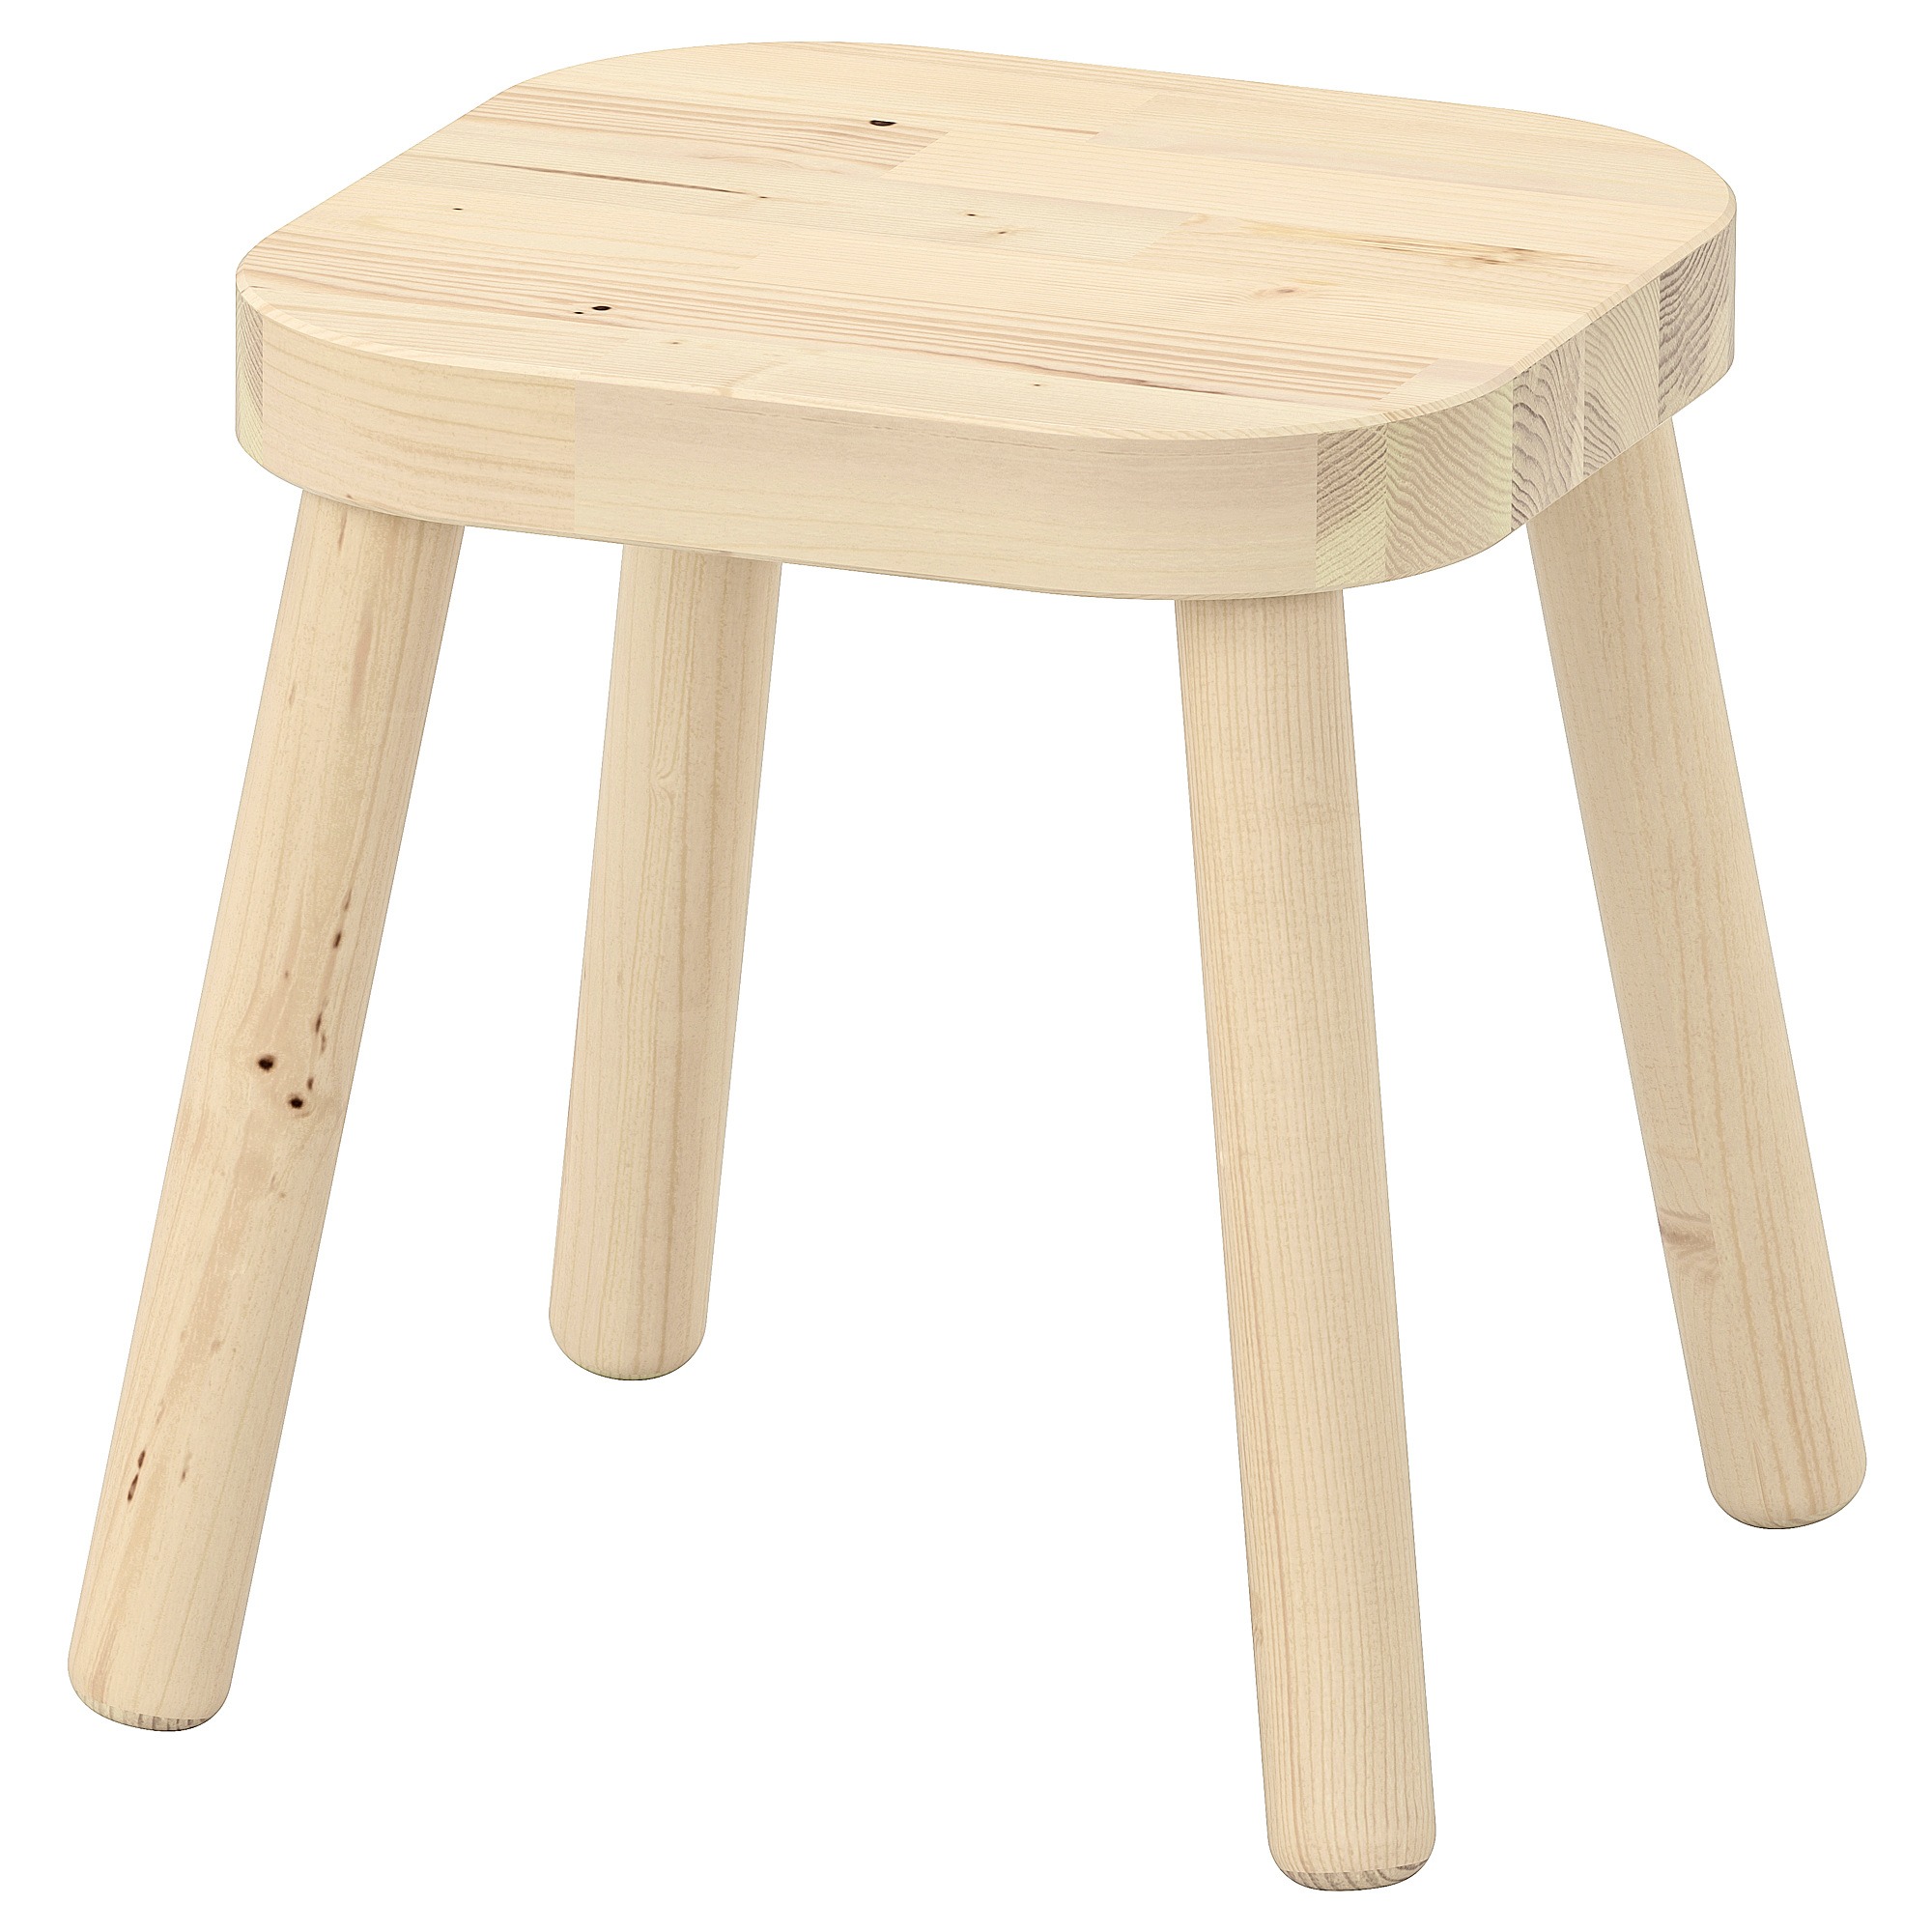 FLISAT children's stool